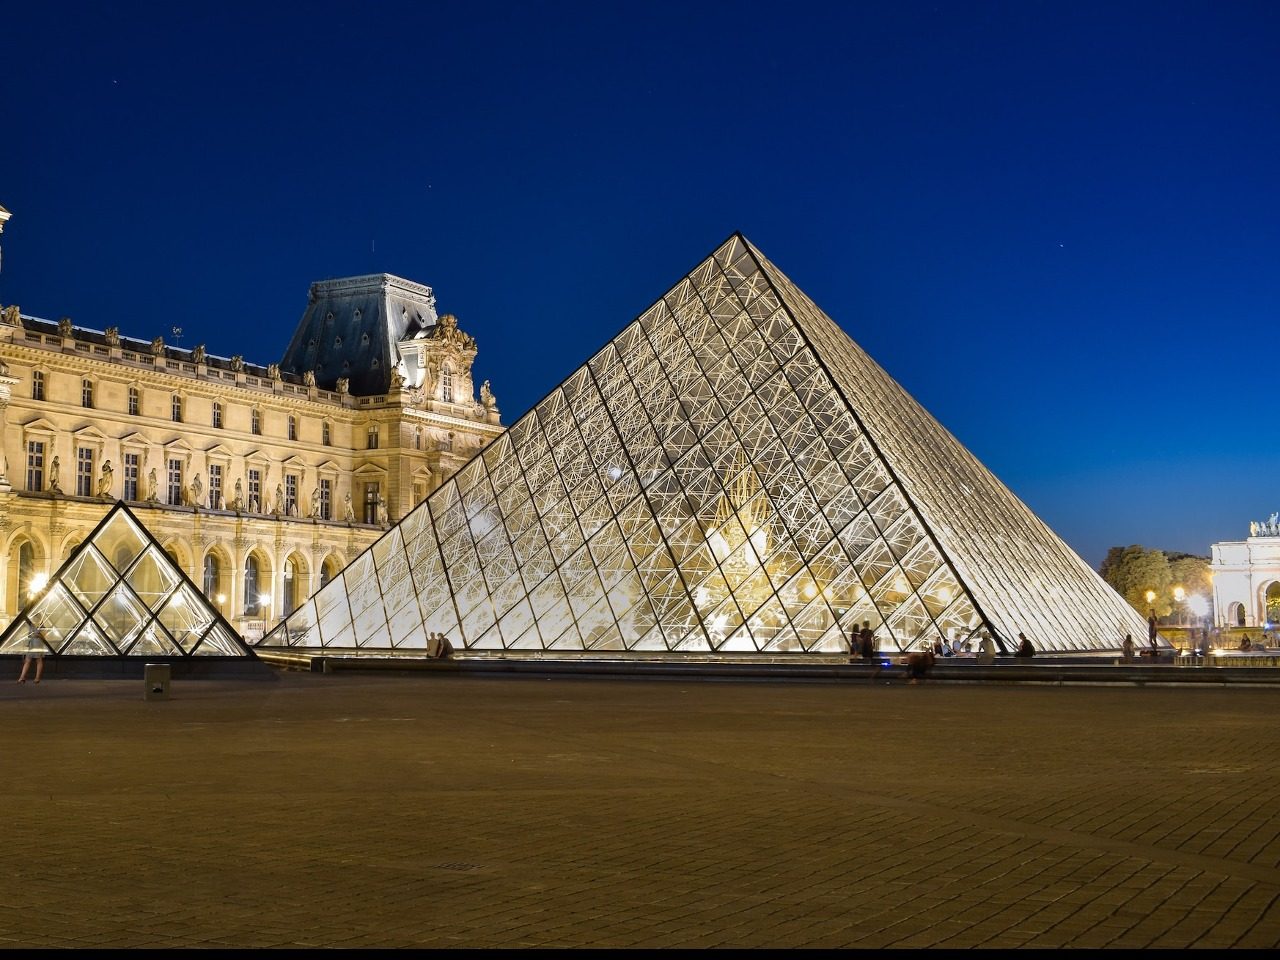 Musée du Louvre - Le jeu de société